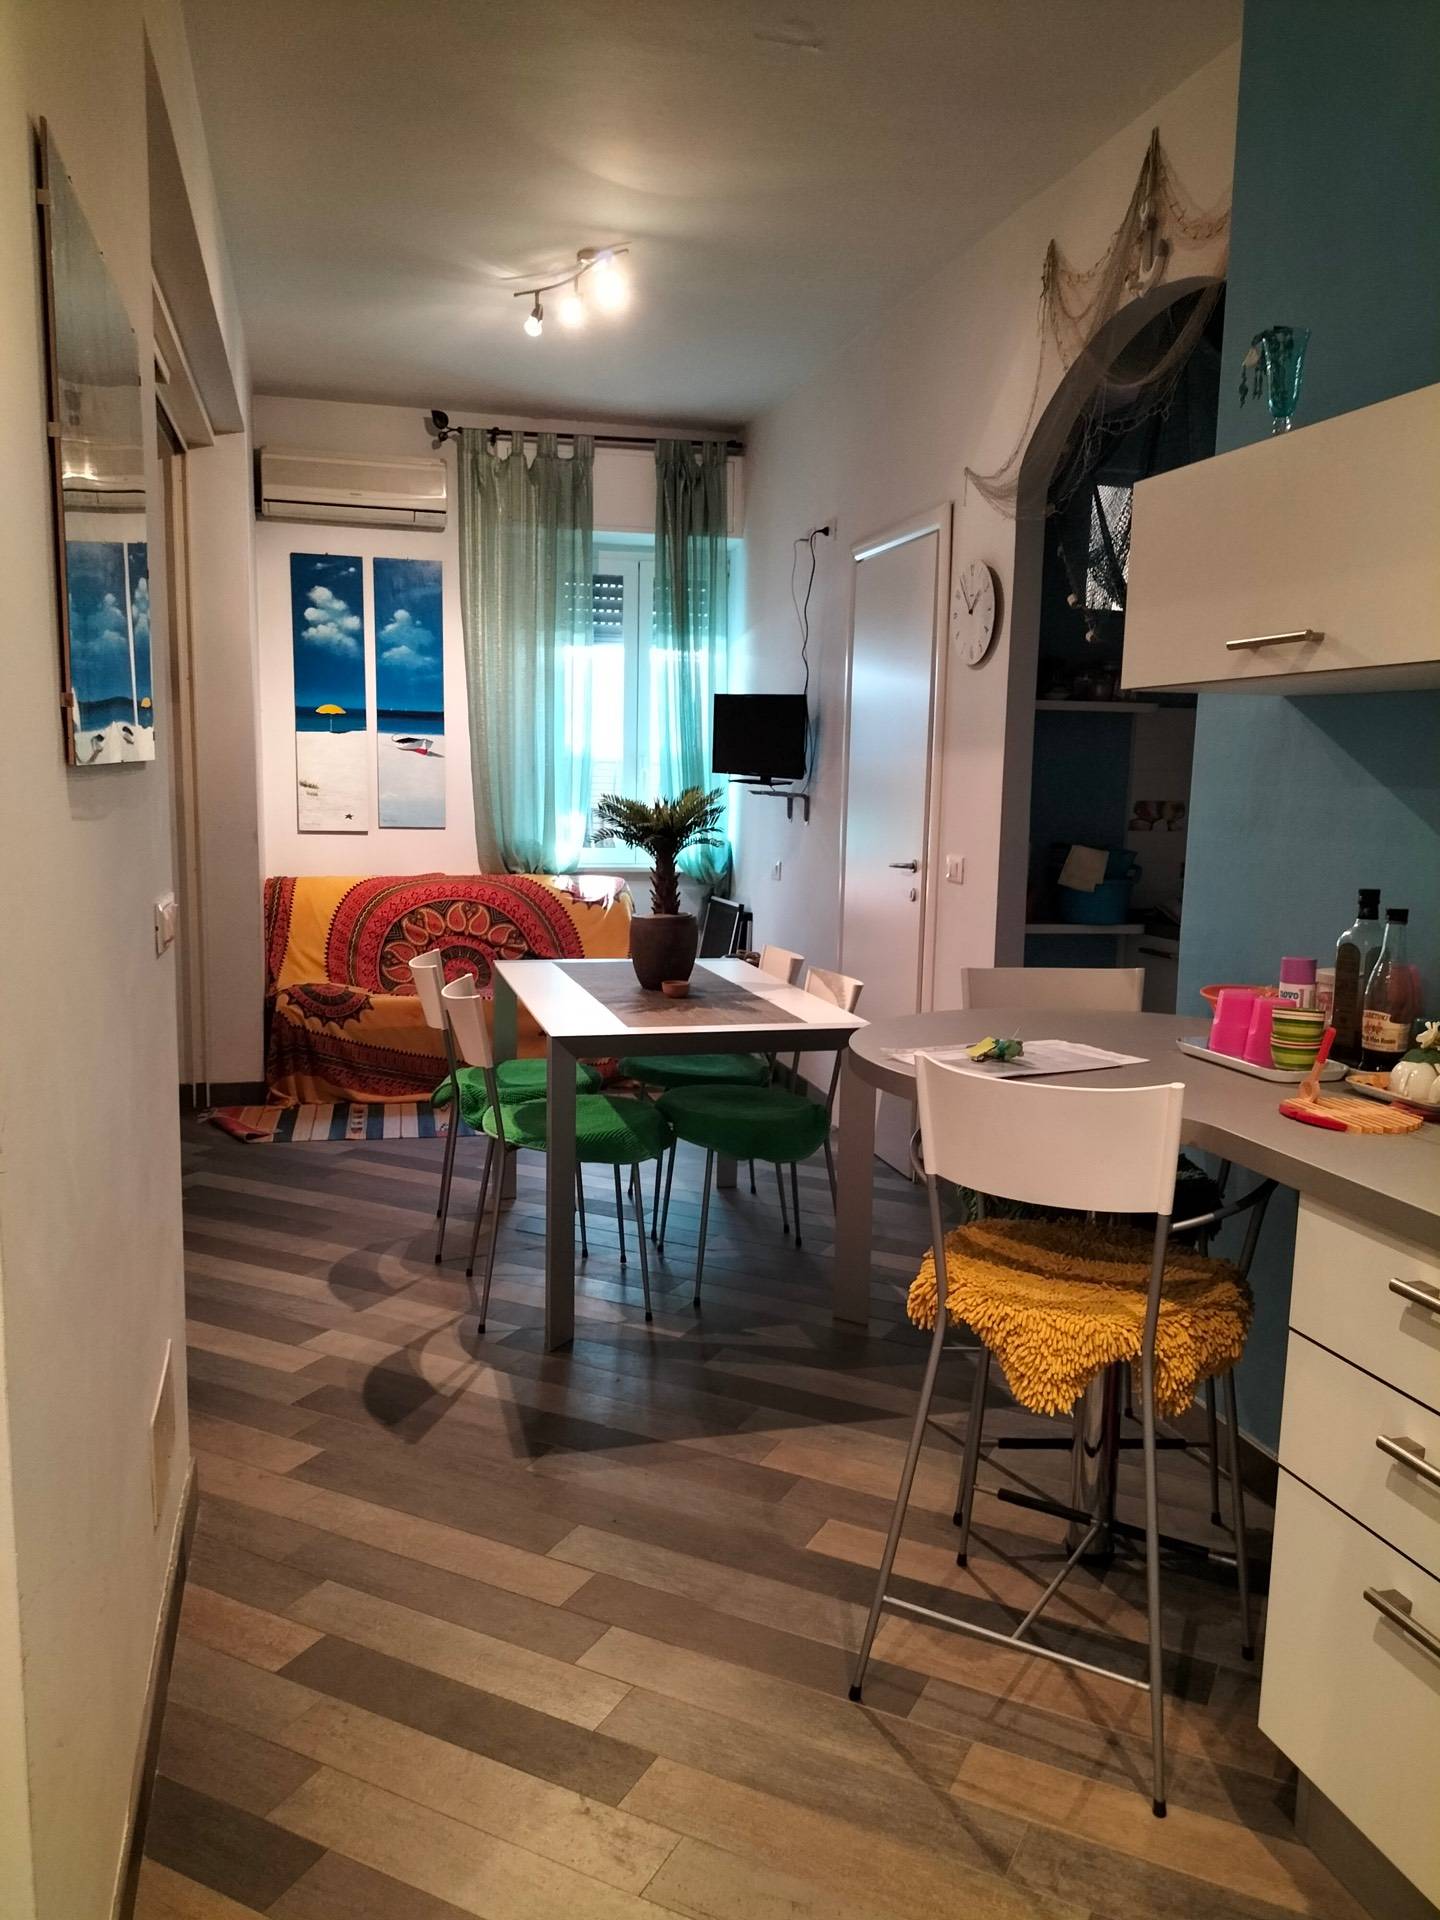 Appartamento in vendita a Carrara, 1 locali, zona Località: MarinadiCarrara, prezzo € 98.000 | PortaleAgenzieImmobiliari.it